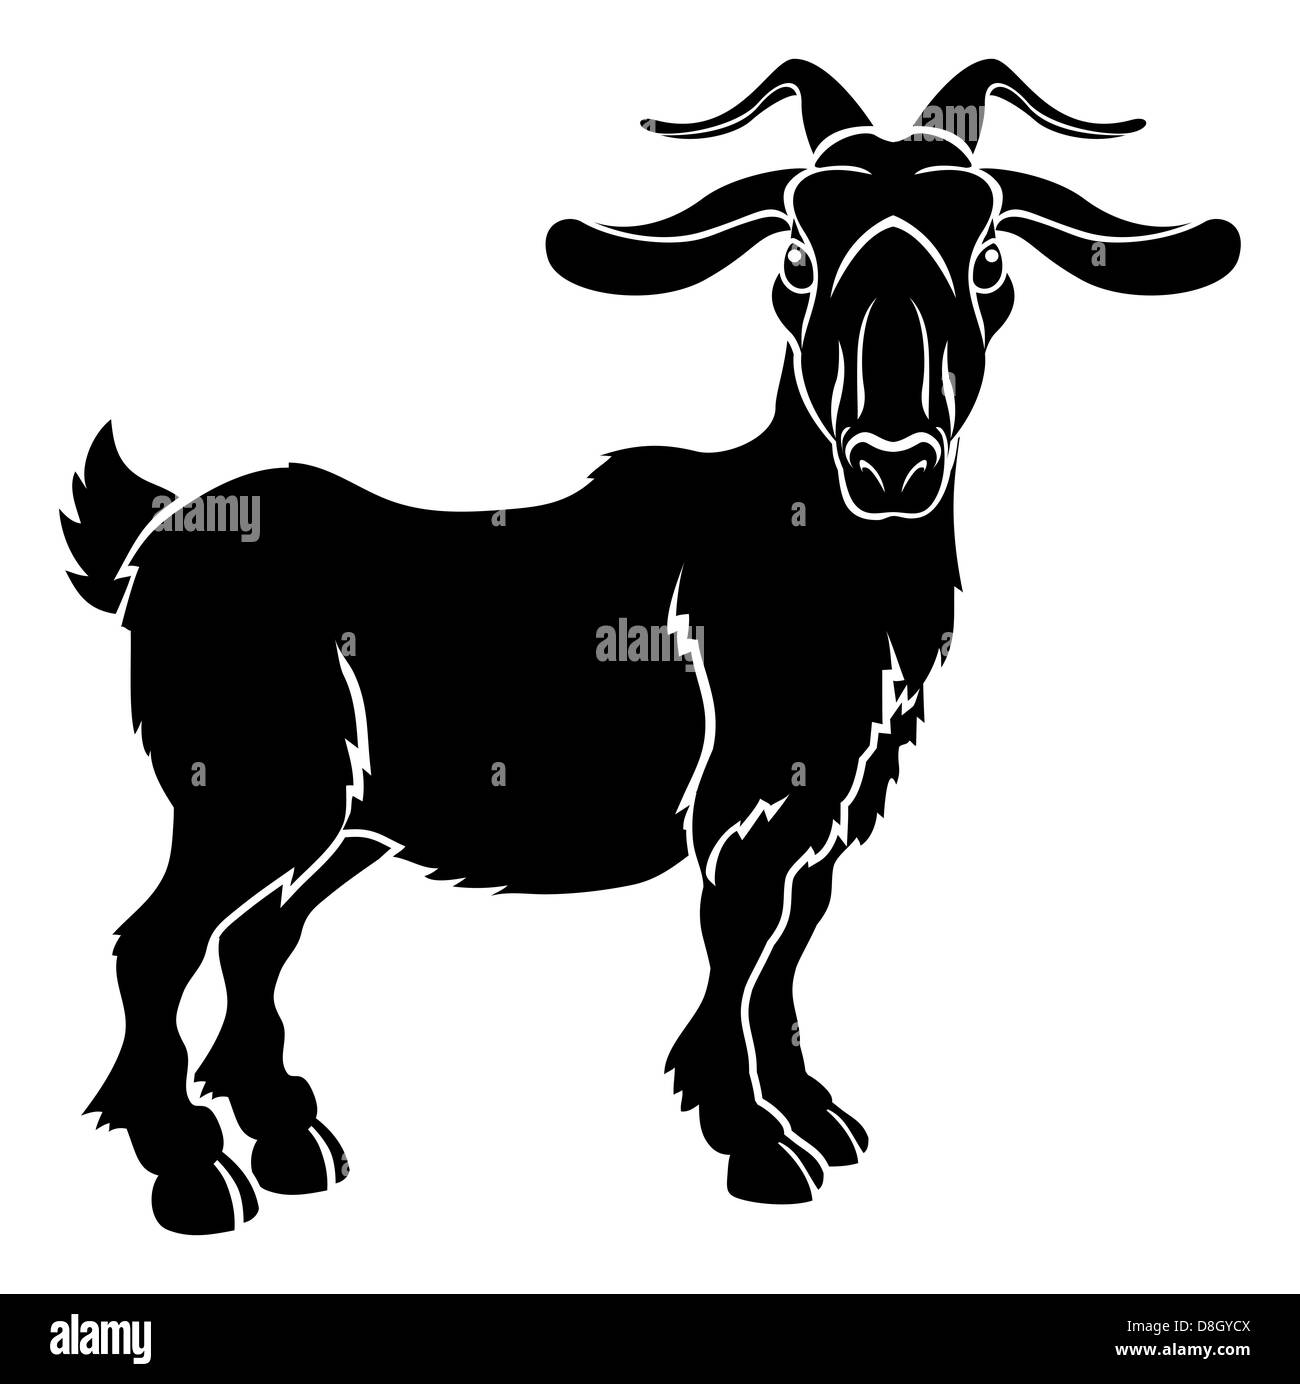 Una illustrazione di stilizzazione di una capra o ram forse un tatuaggio di capra Foto Stock